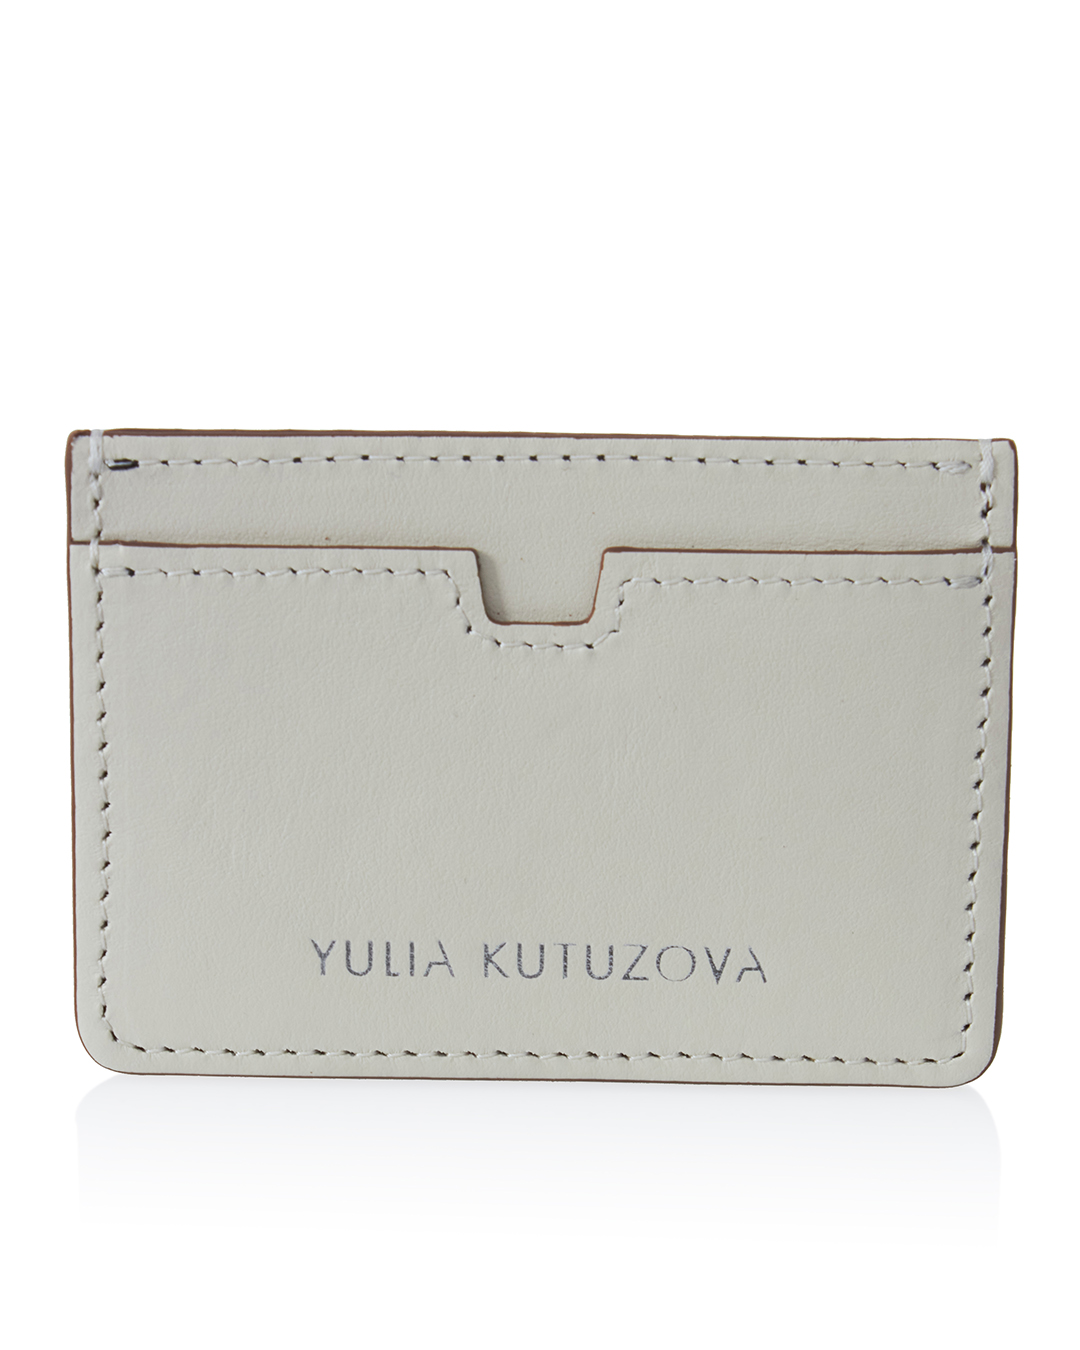 YULIA KUTUZOVA  артикул  марки YULIA KUTUZOVA купить за 4100 руб.